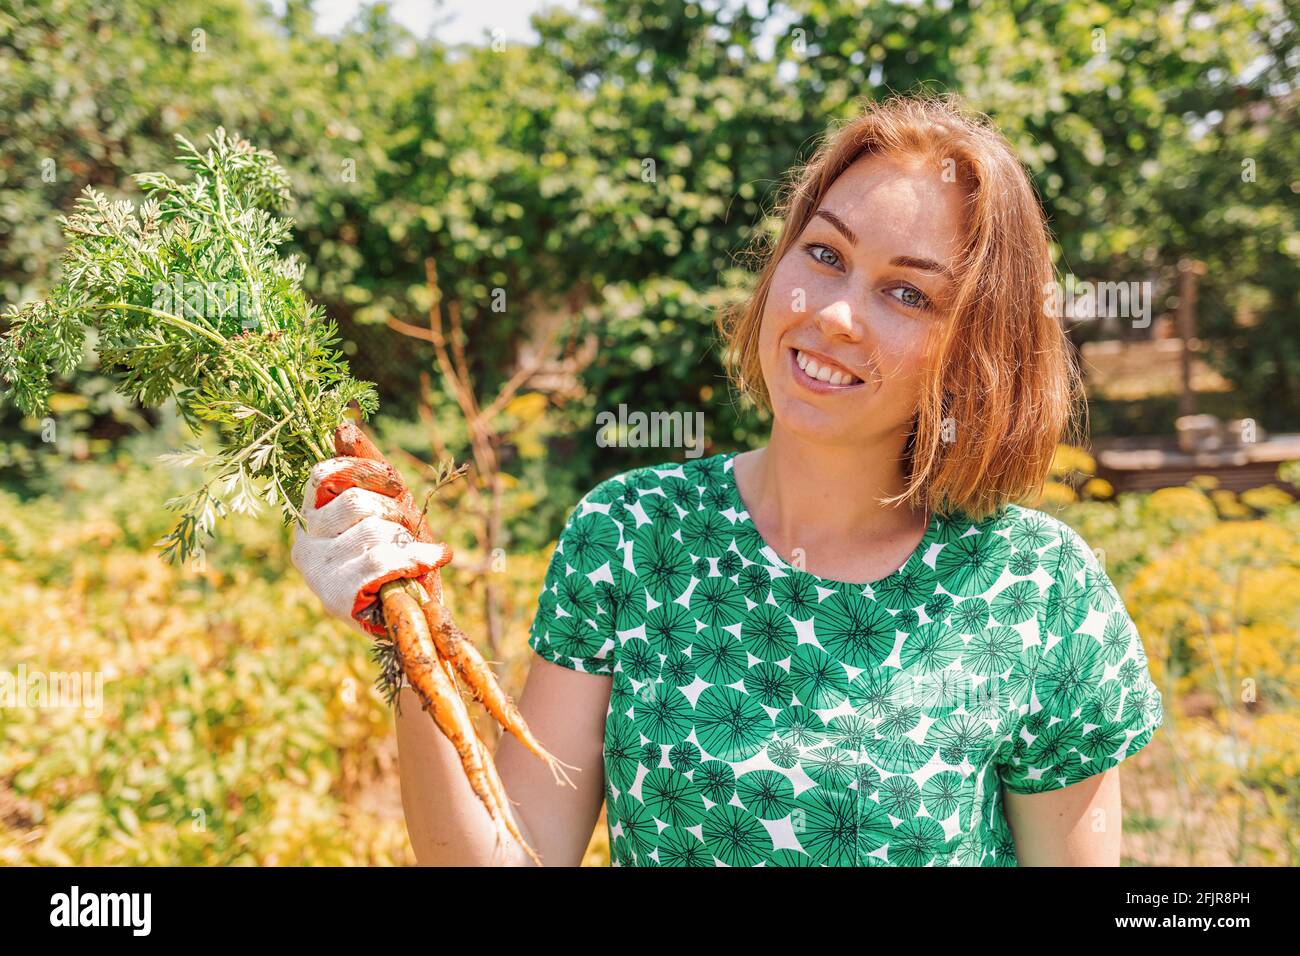 Eine kaukasische junge Frau lächelt und hält ein paar frisch gepflückte Karotten. Vegetation im Hintergrund.Konzept der Ernte und Gartenarbeit. Stockfoto